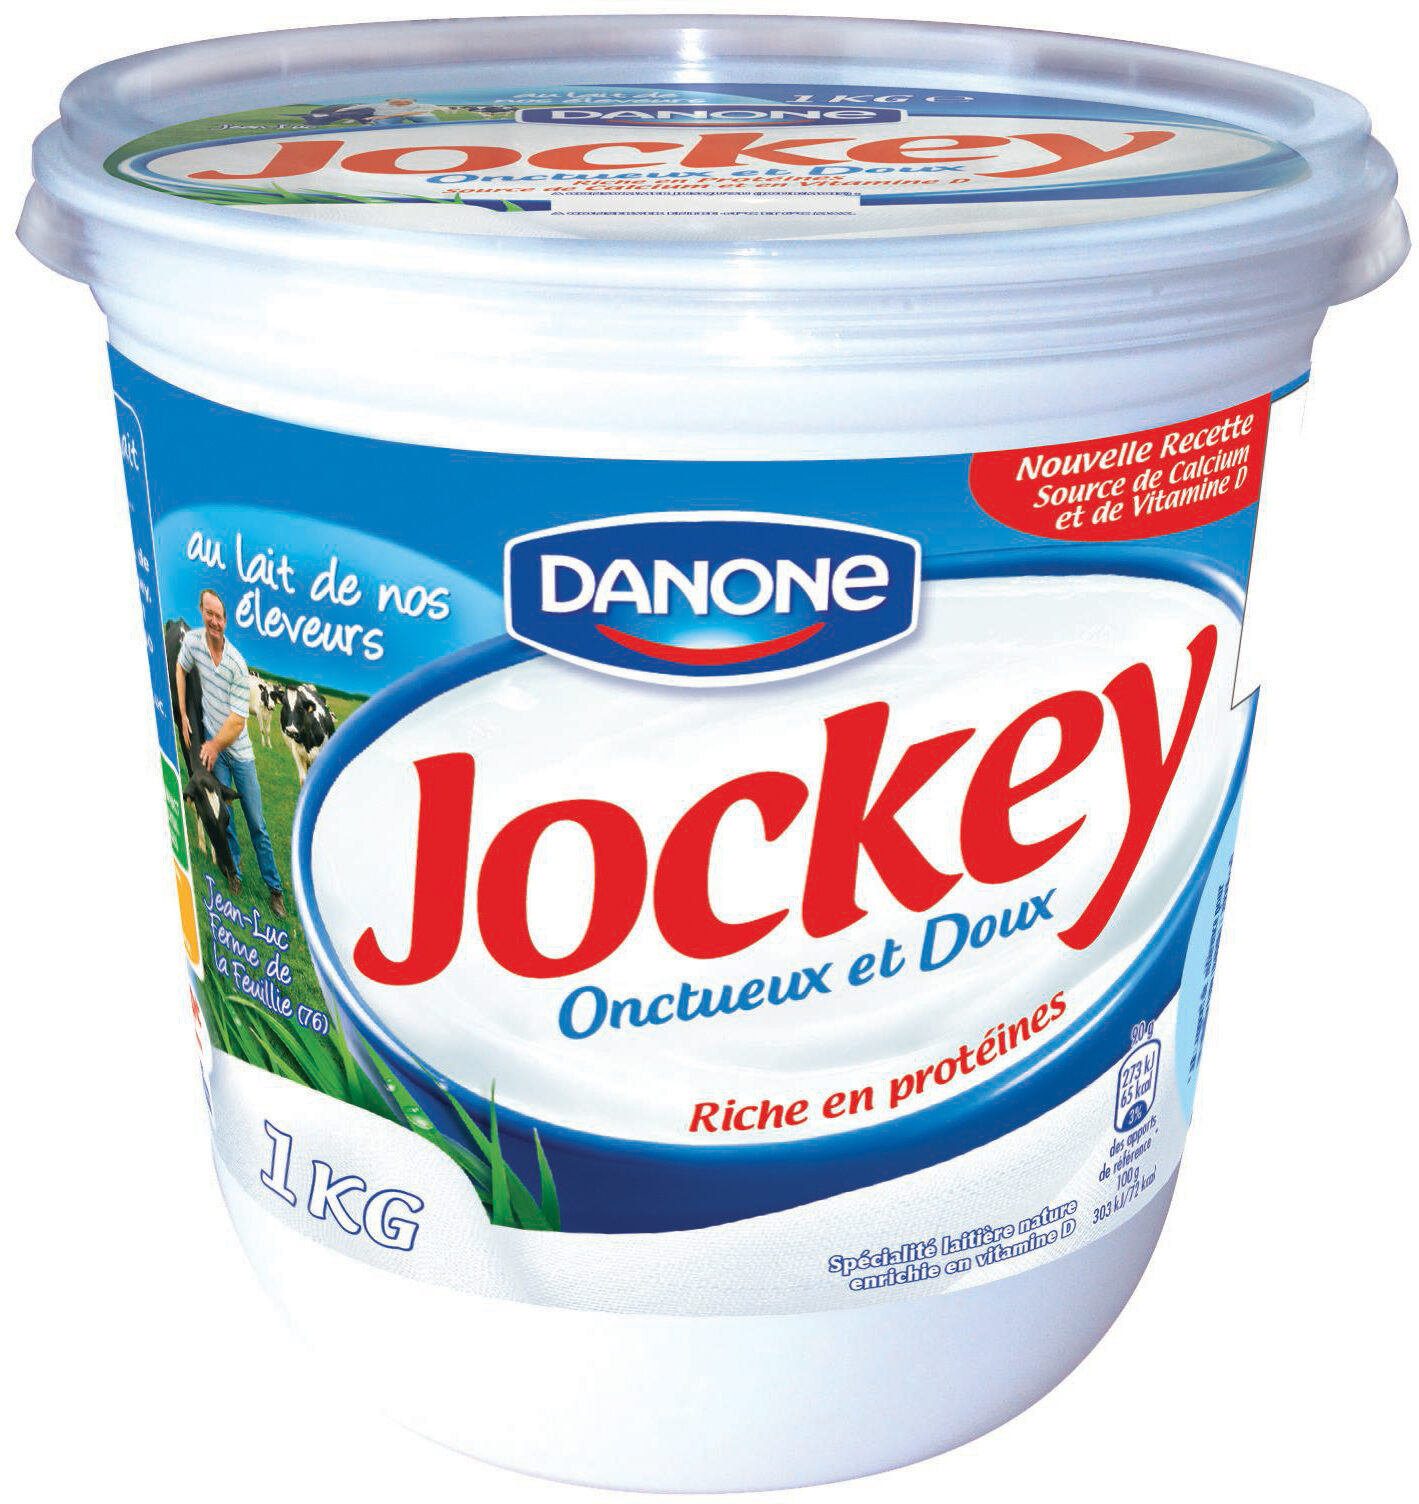 Jockey 3% de mg nature 1 kg x 1 - Produkt - fr